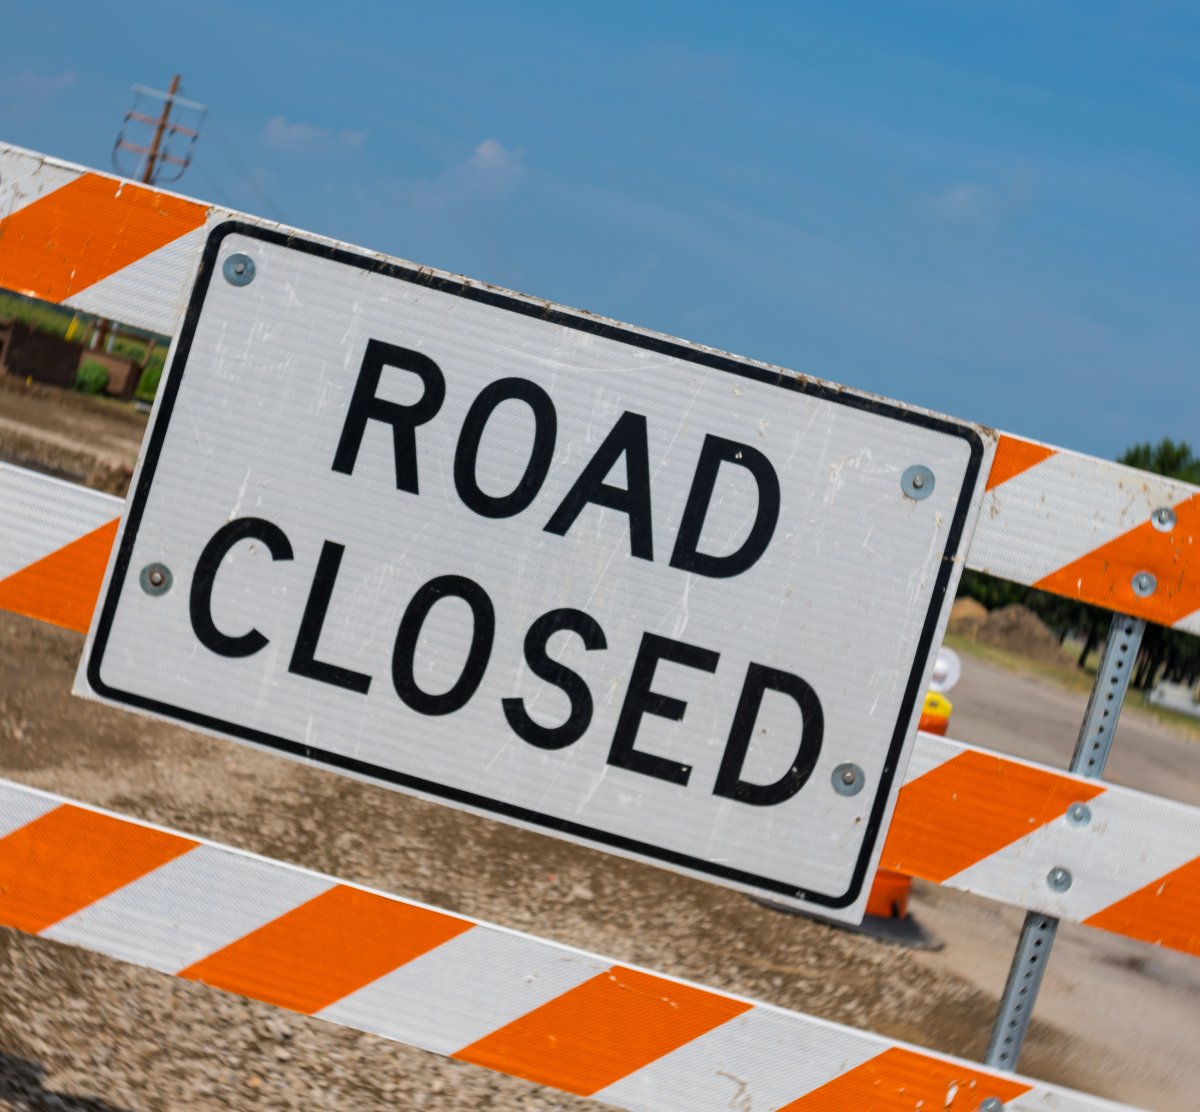 도로 건설과 세인트 비탈 브리지 프로젝트를 위해 임시 도로 폐쇄가 발표돼